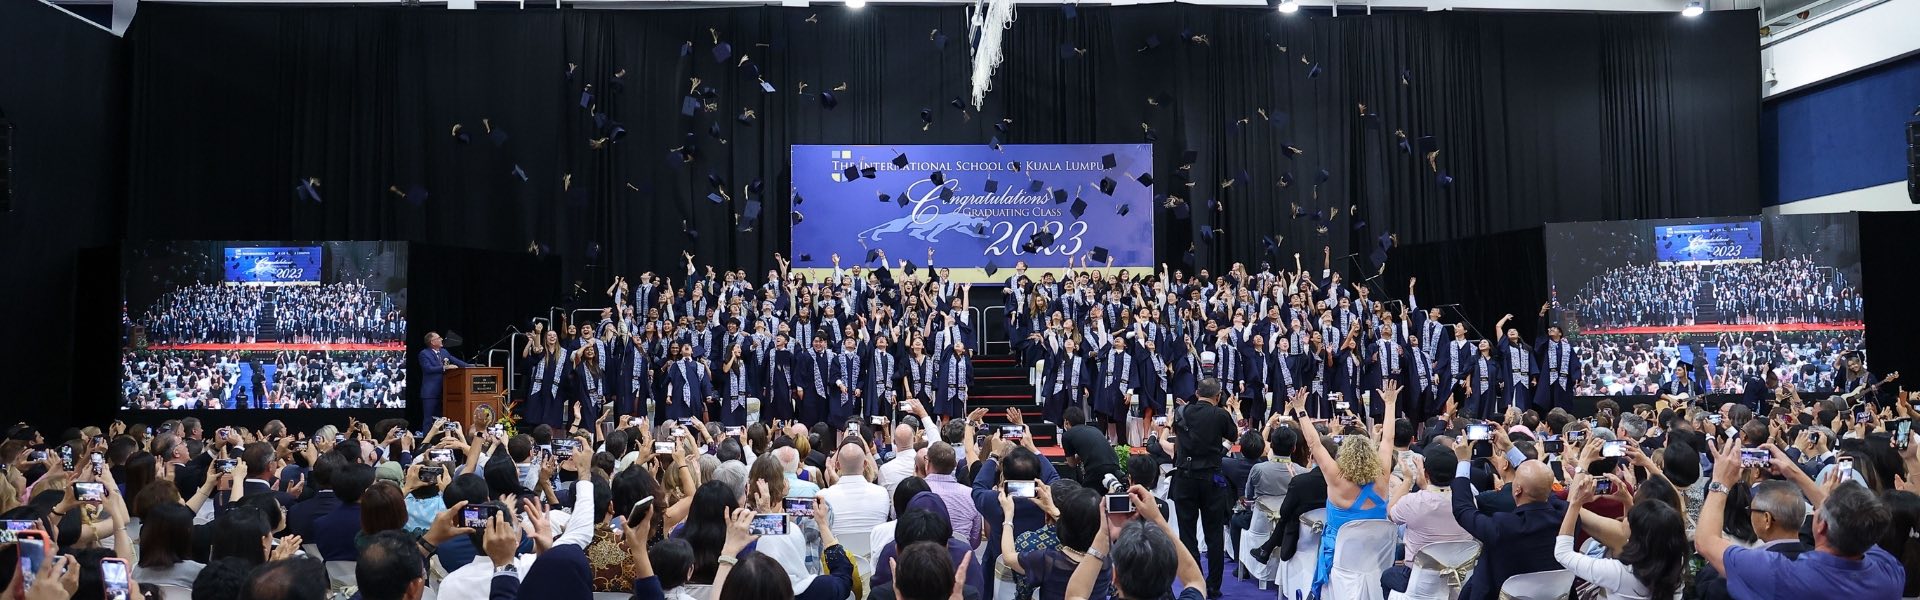 Graduation ceremony photo